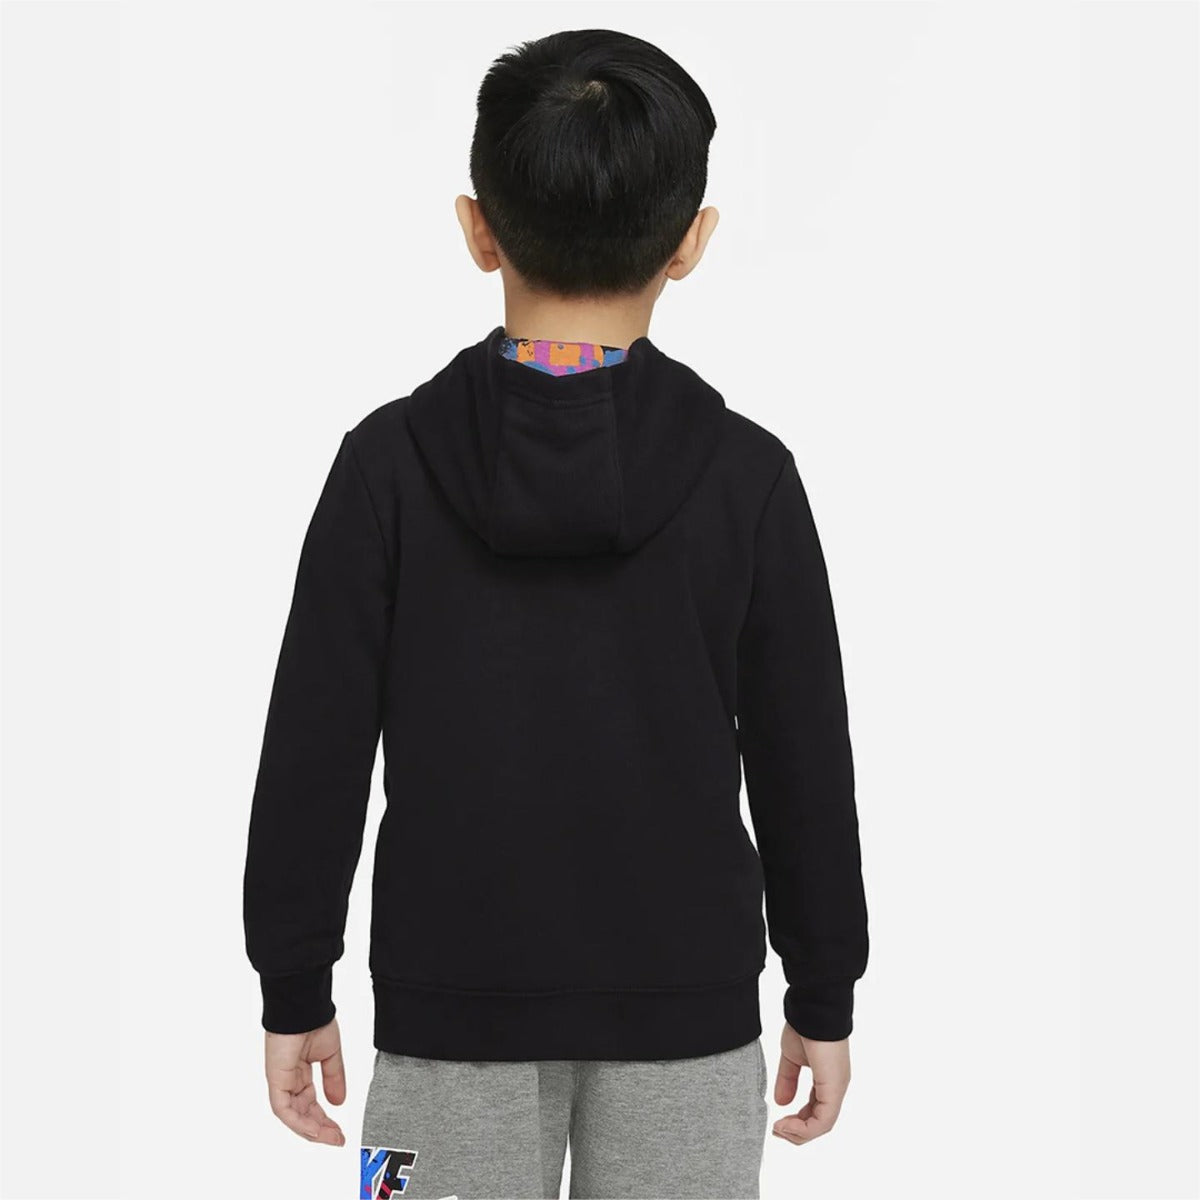 Nike Sportswear Kids Sweatshirt - Black